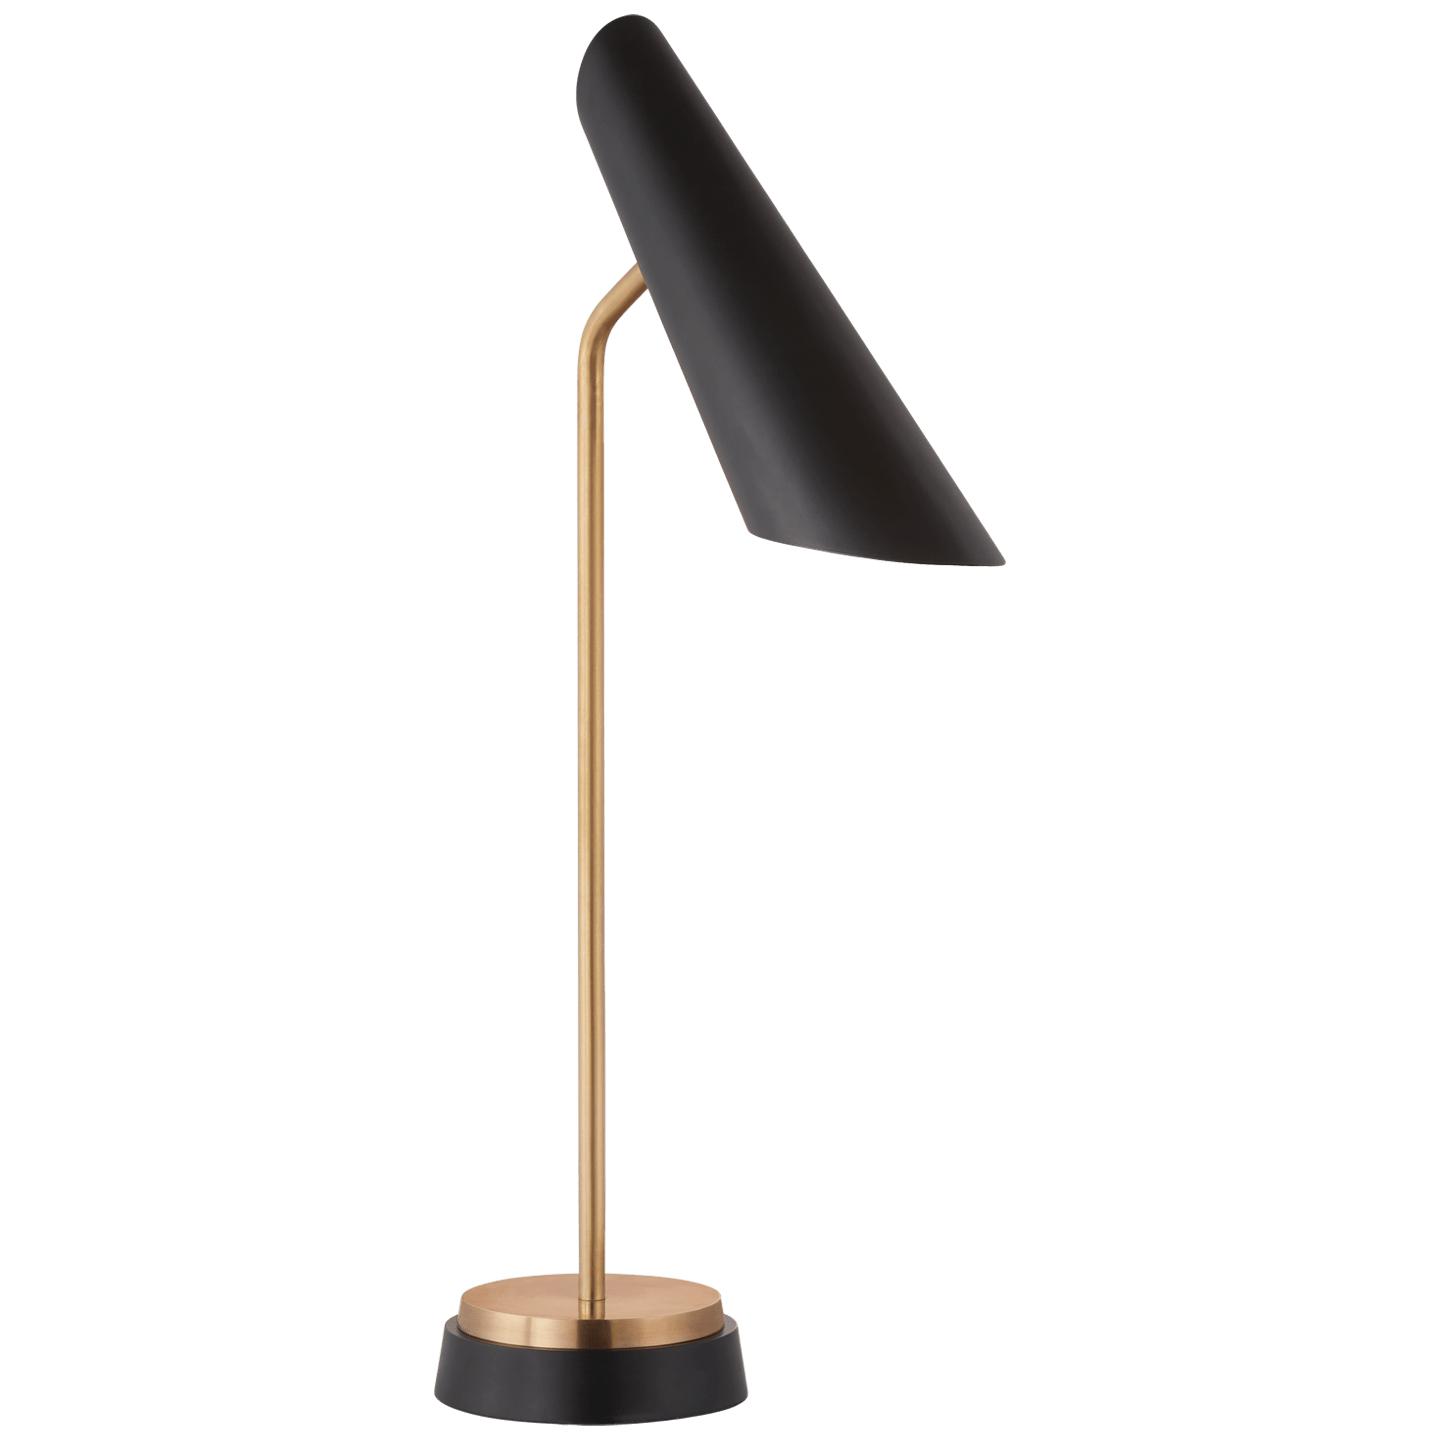 Купить Рабочая лампа Franca Single Pivoting Task Lamp в интернет-магазине roooms.ru